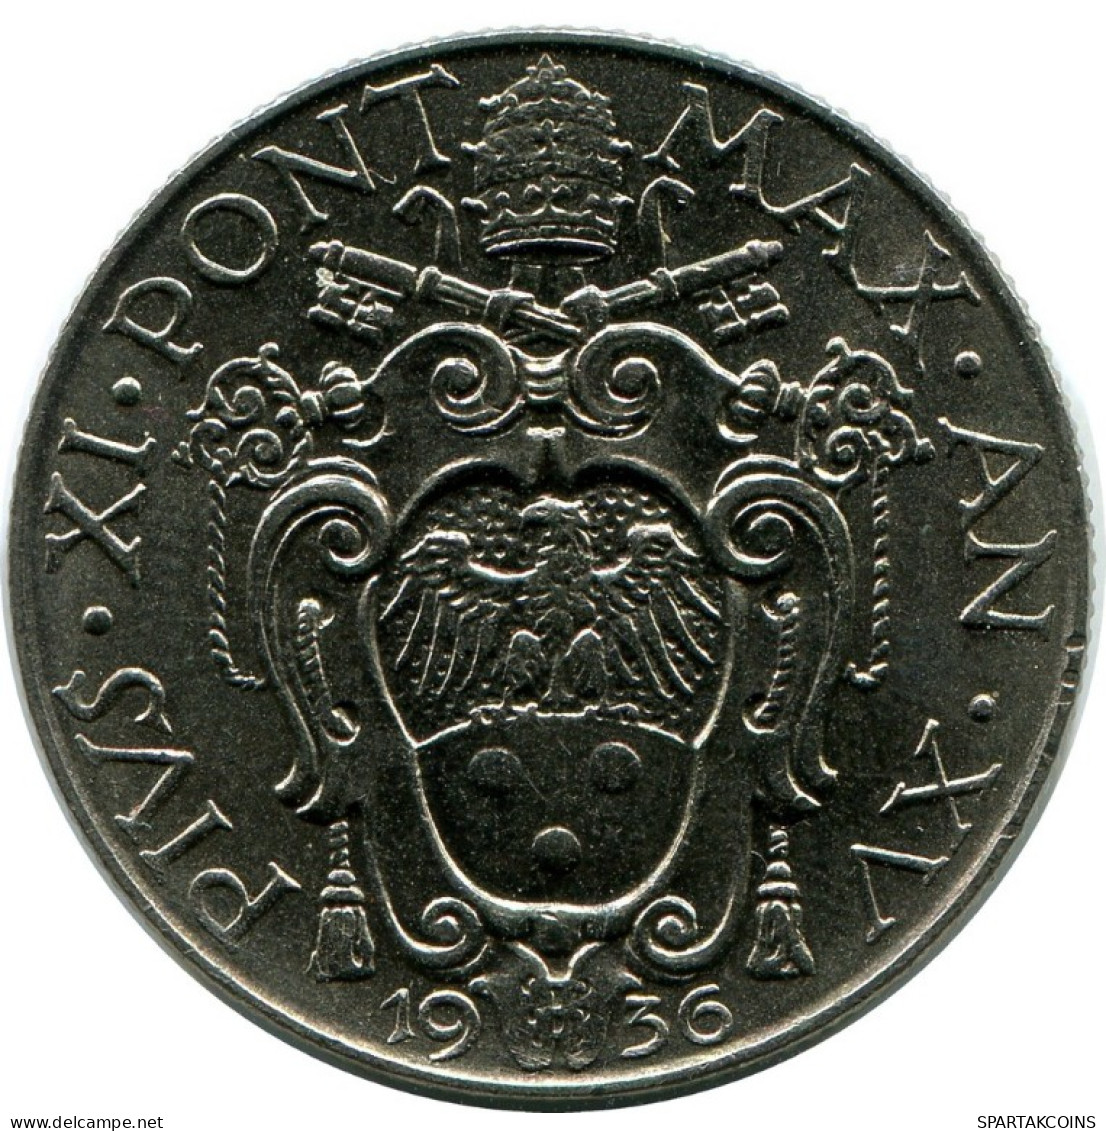 1 LIRE 1936 VATICAN Coin Pius XI (1922-1939) #AH309.16.U.A - Vaticano